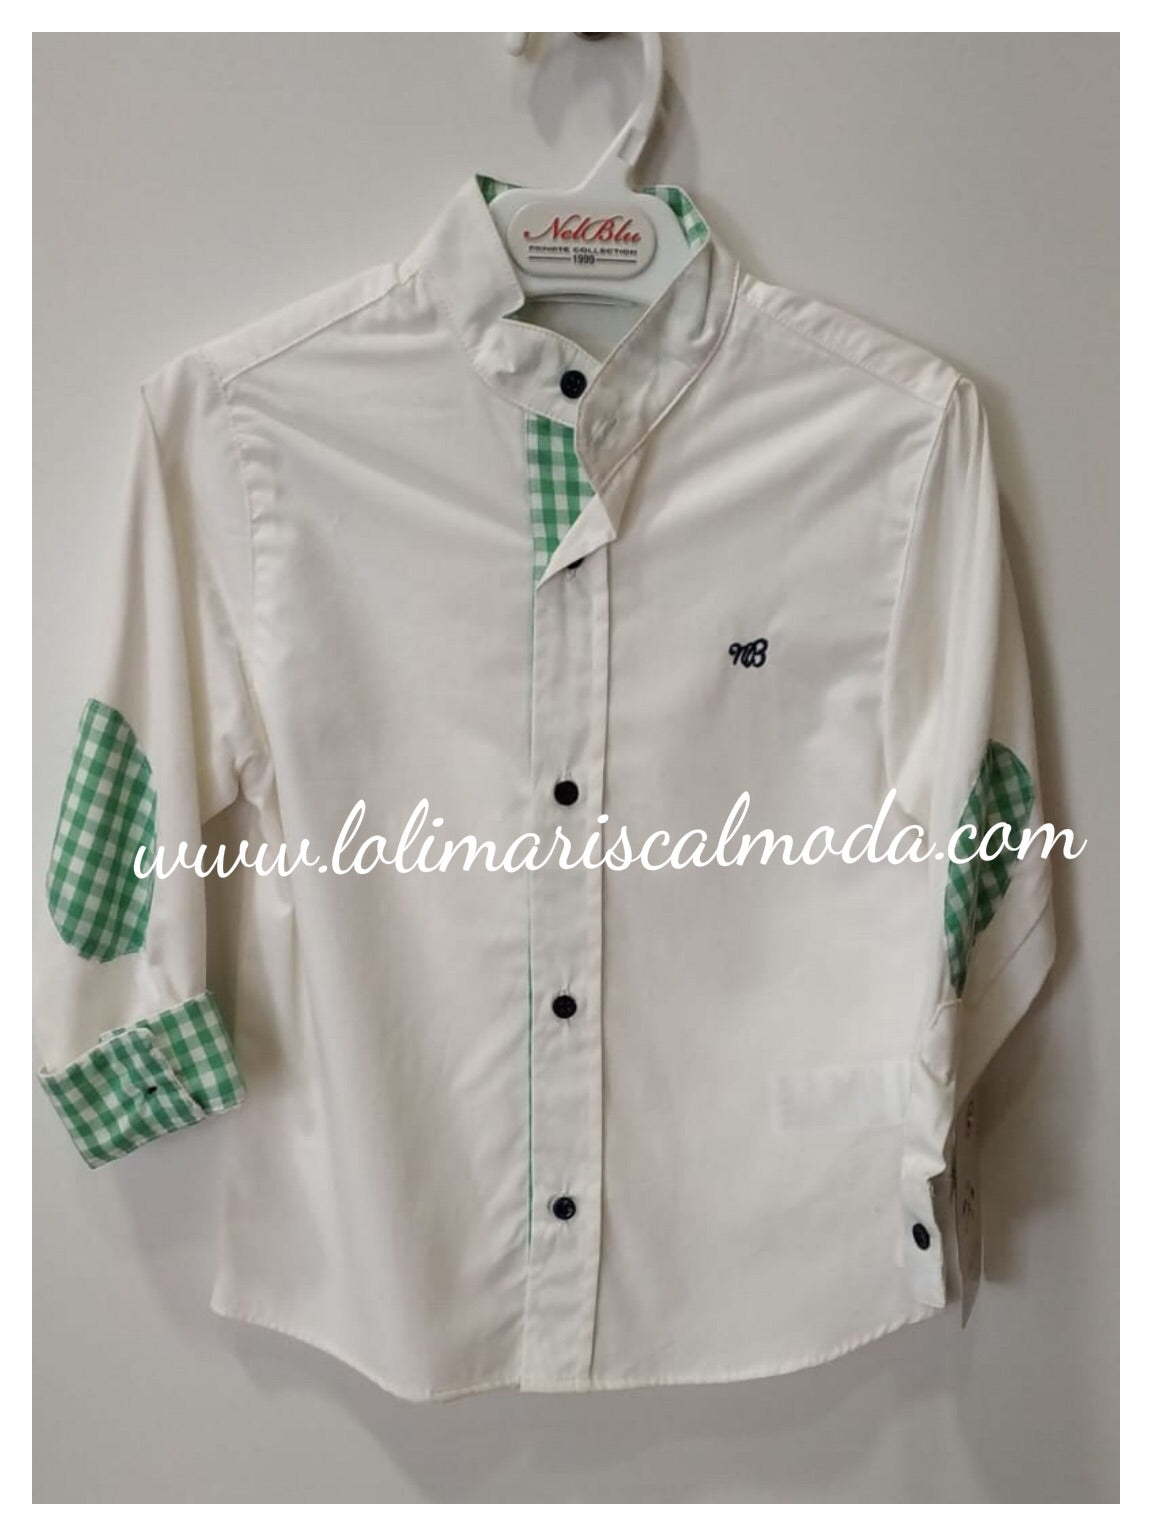 Camisa Blanco roto y verde lolimariscalmoda 21.90